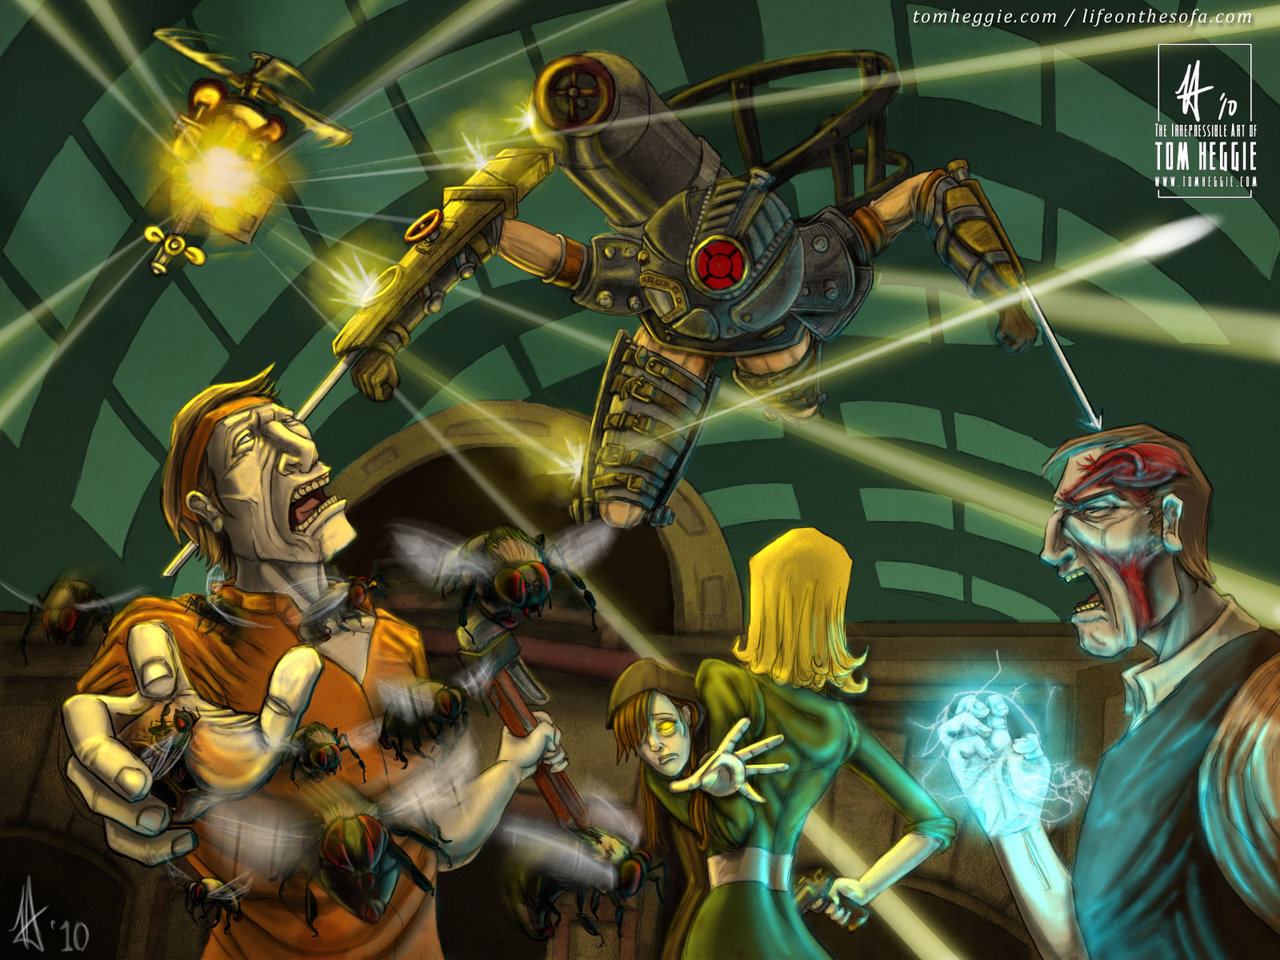 Bioshock 2 Desktop Wallpaper by LifeOnTheSofa on